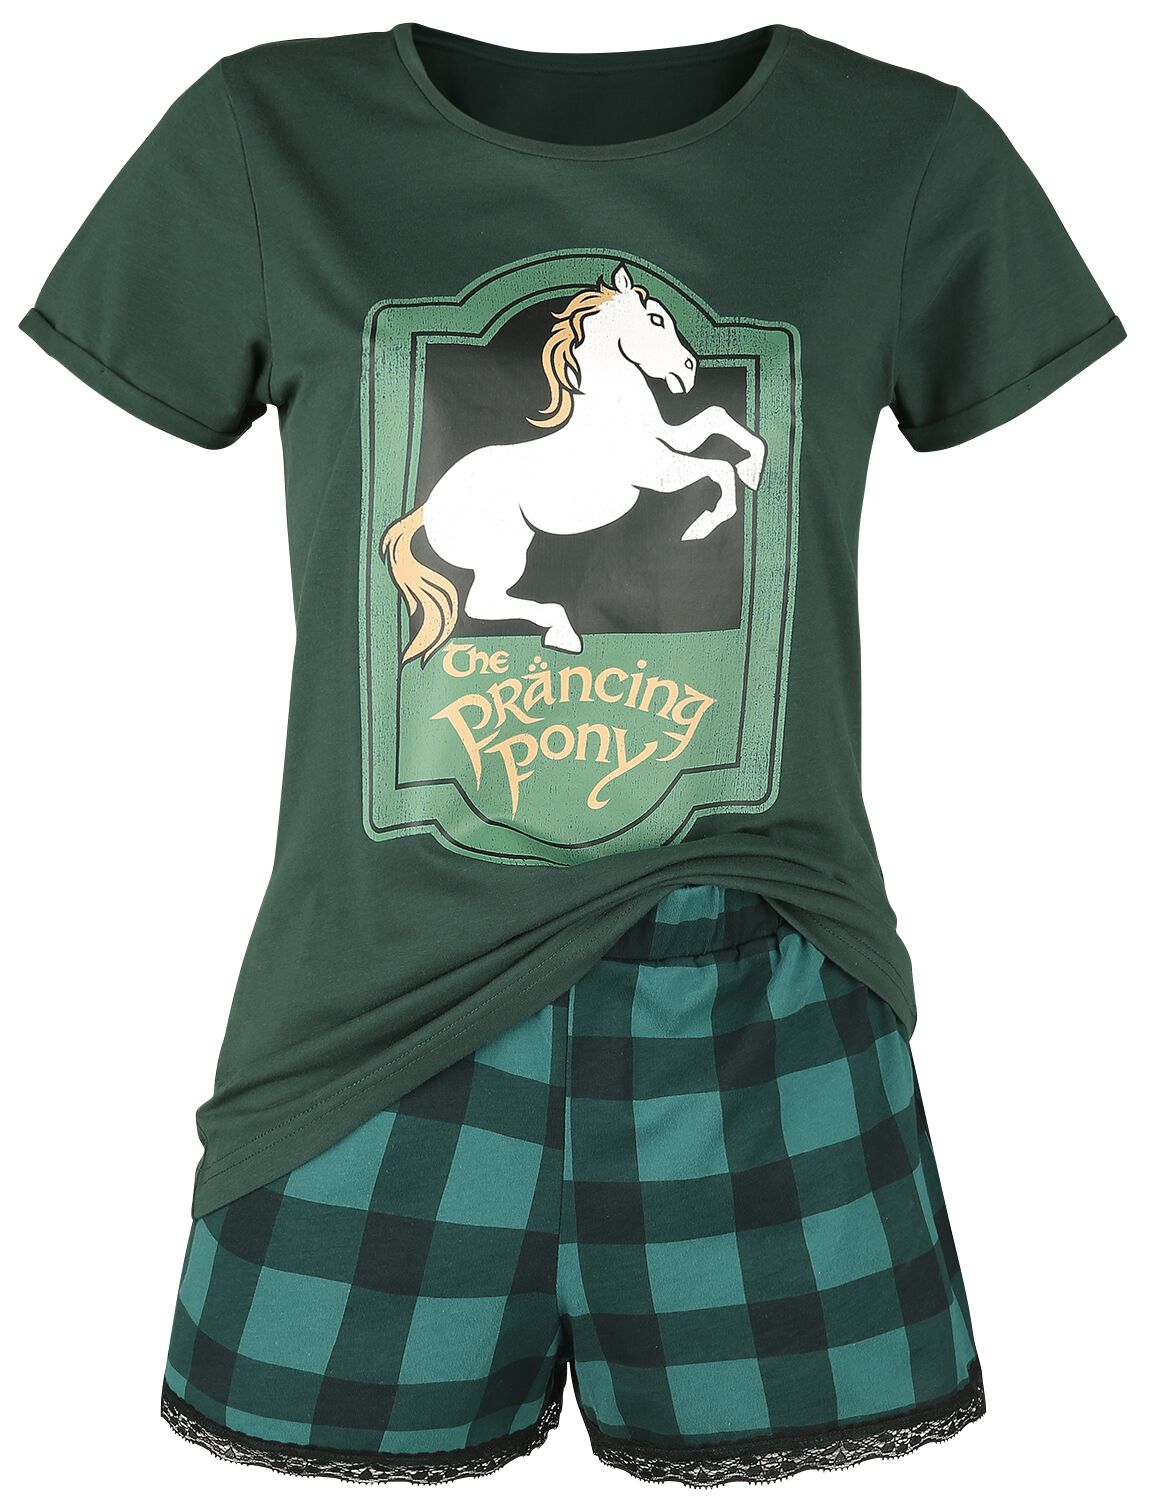 Der Herr der Ringe Prancing Pony Schlafanzug dunkelgrün